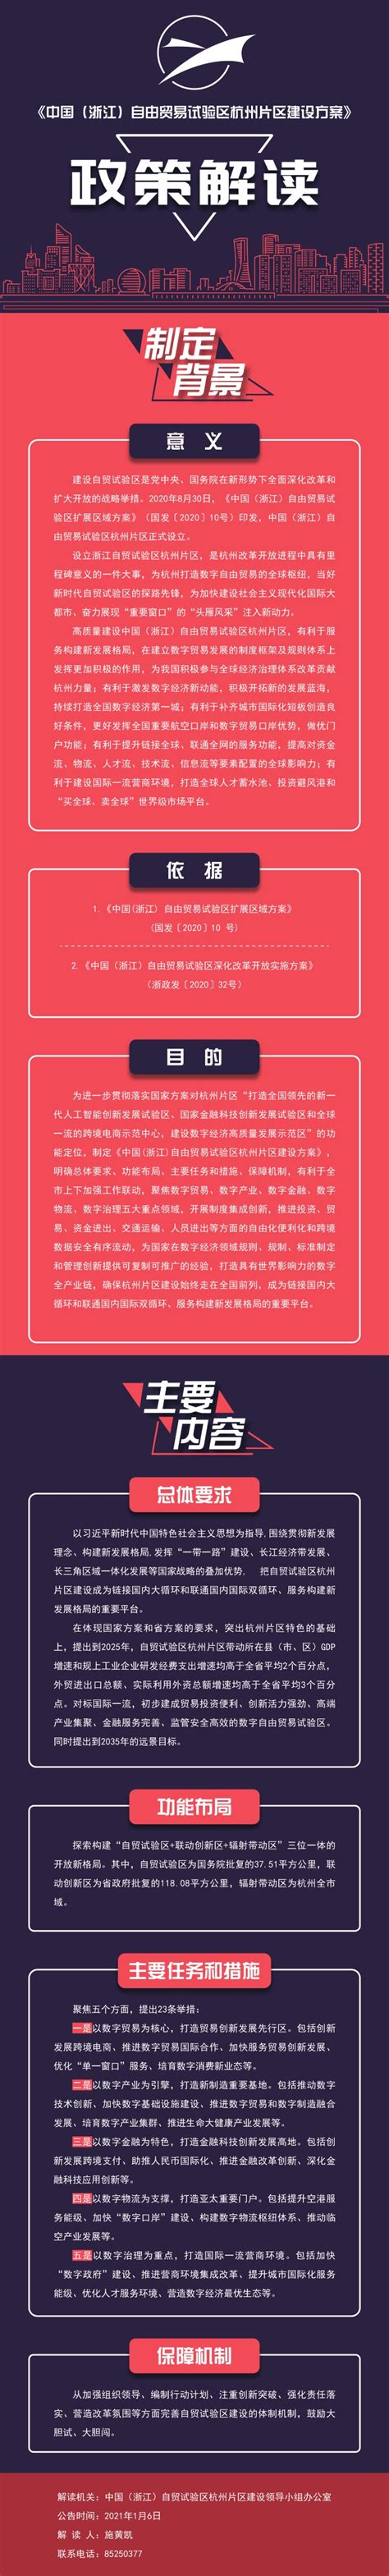 《杭州市人民政府公报》2022年全套_文库-报告厅